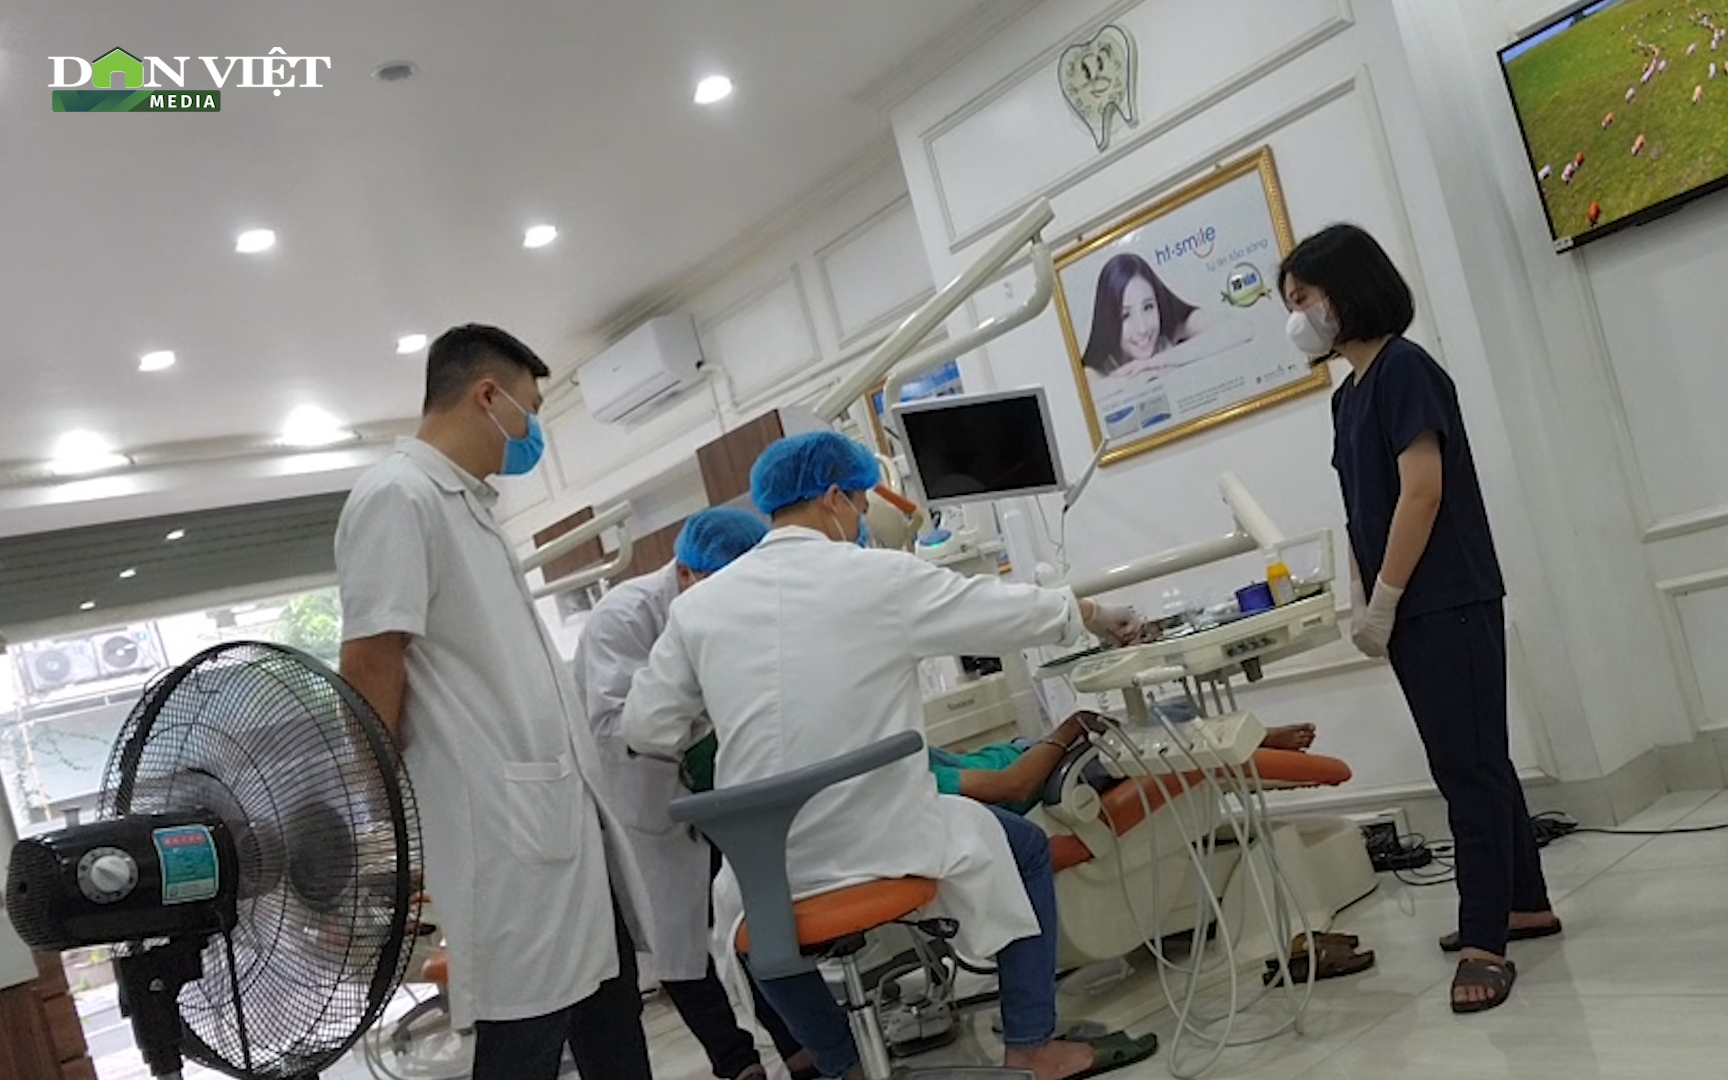 Quận Hà Đông (Hà Nội): Tràn lan nha khoa không phép hoạt động xem thường tính mạng người bệnh